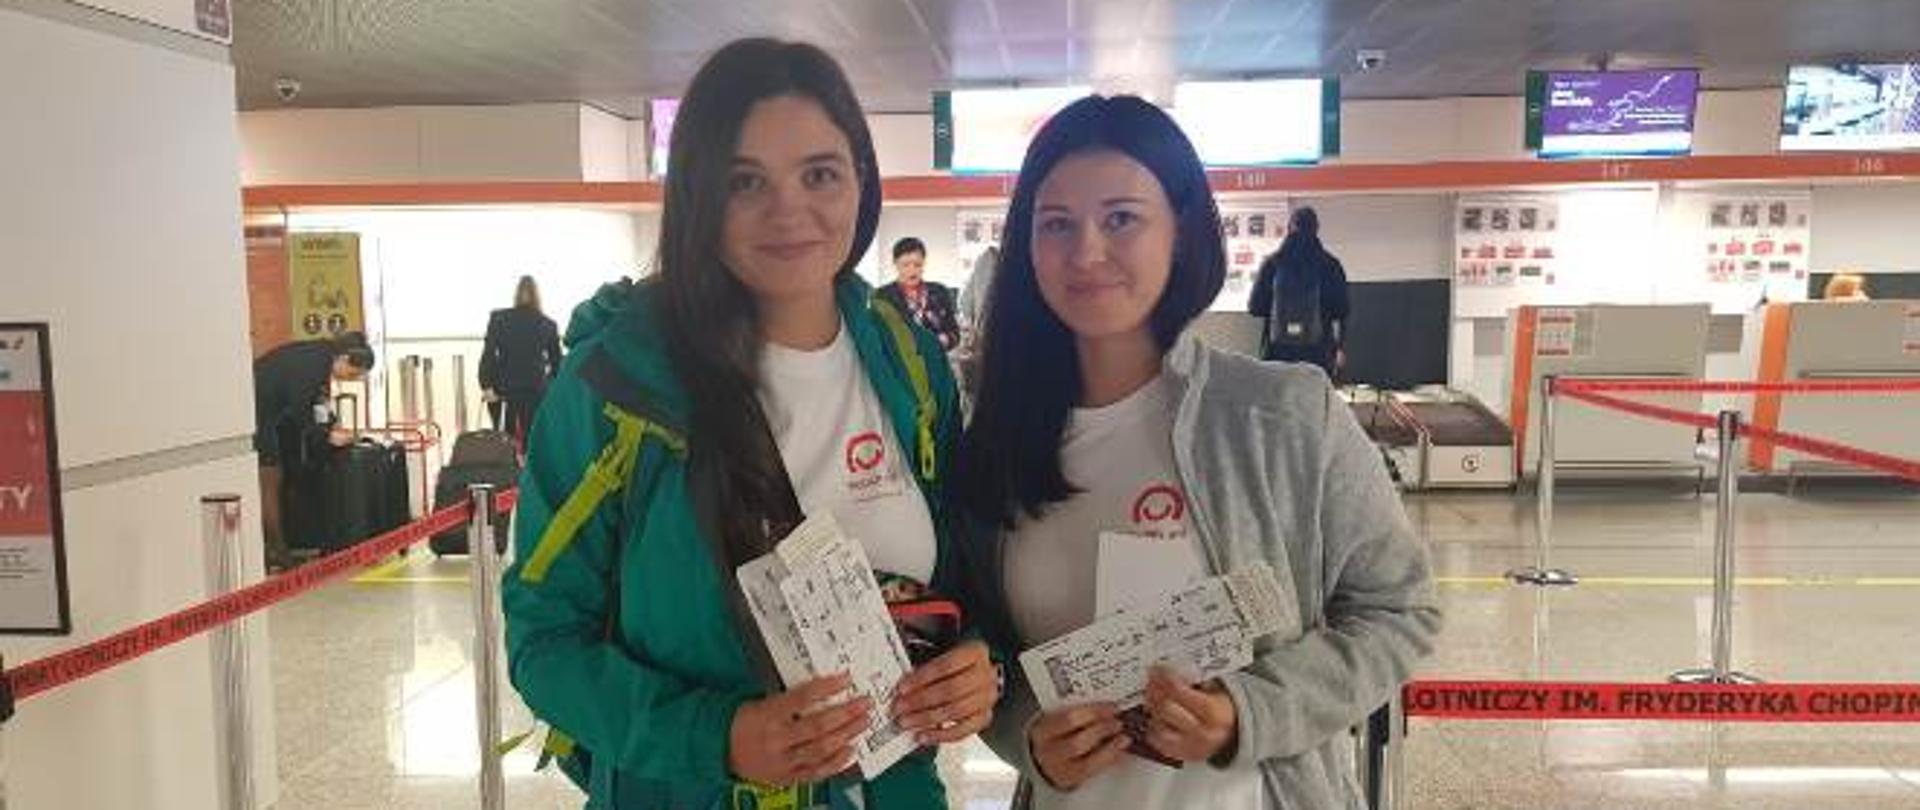 Dwie wolontariuszki w koszulkach Polskiej pomocy z biletami po odprawie na lotnisku Chopina w Warszawie